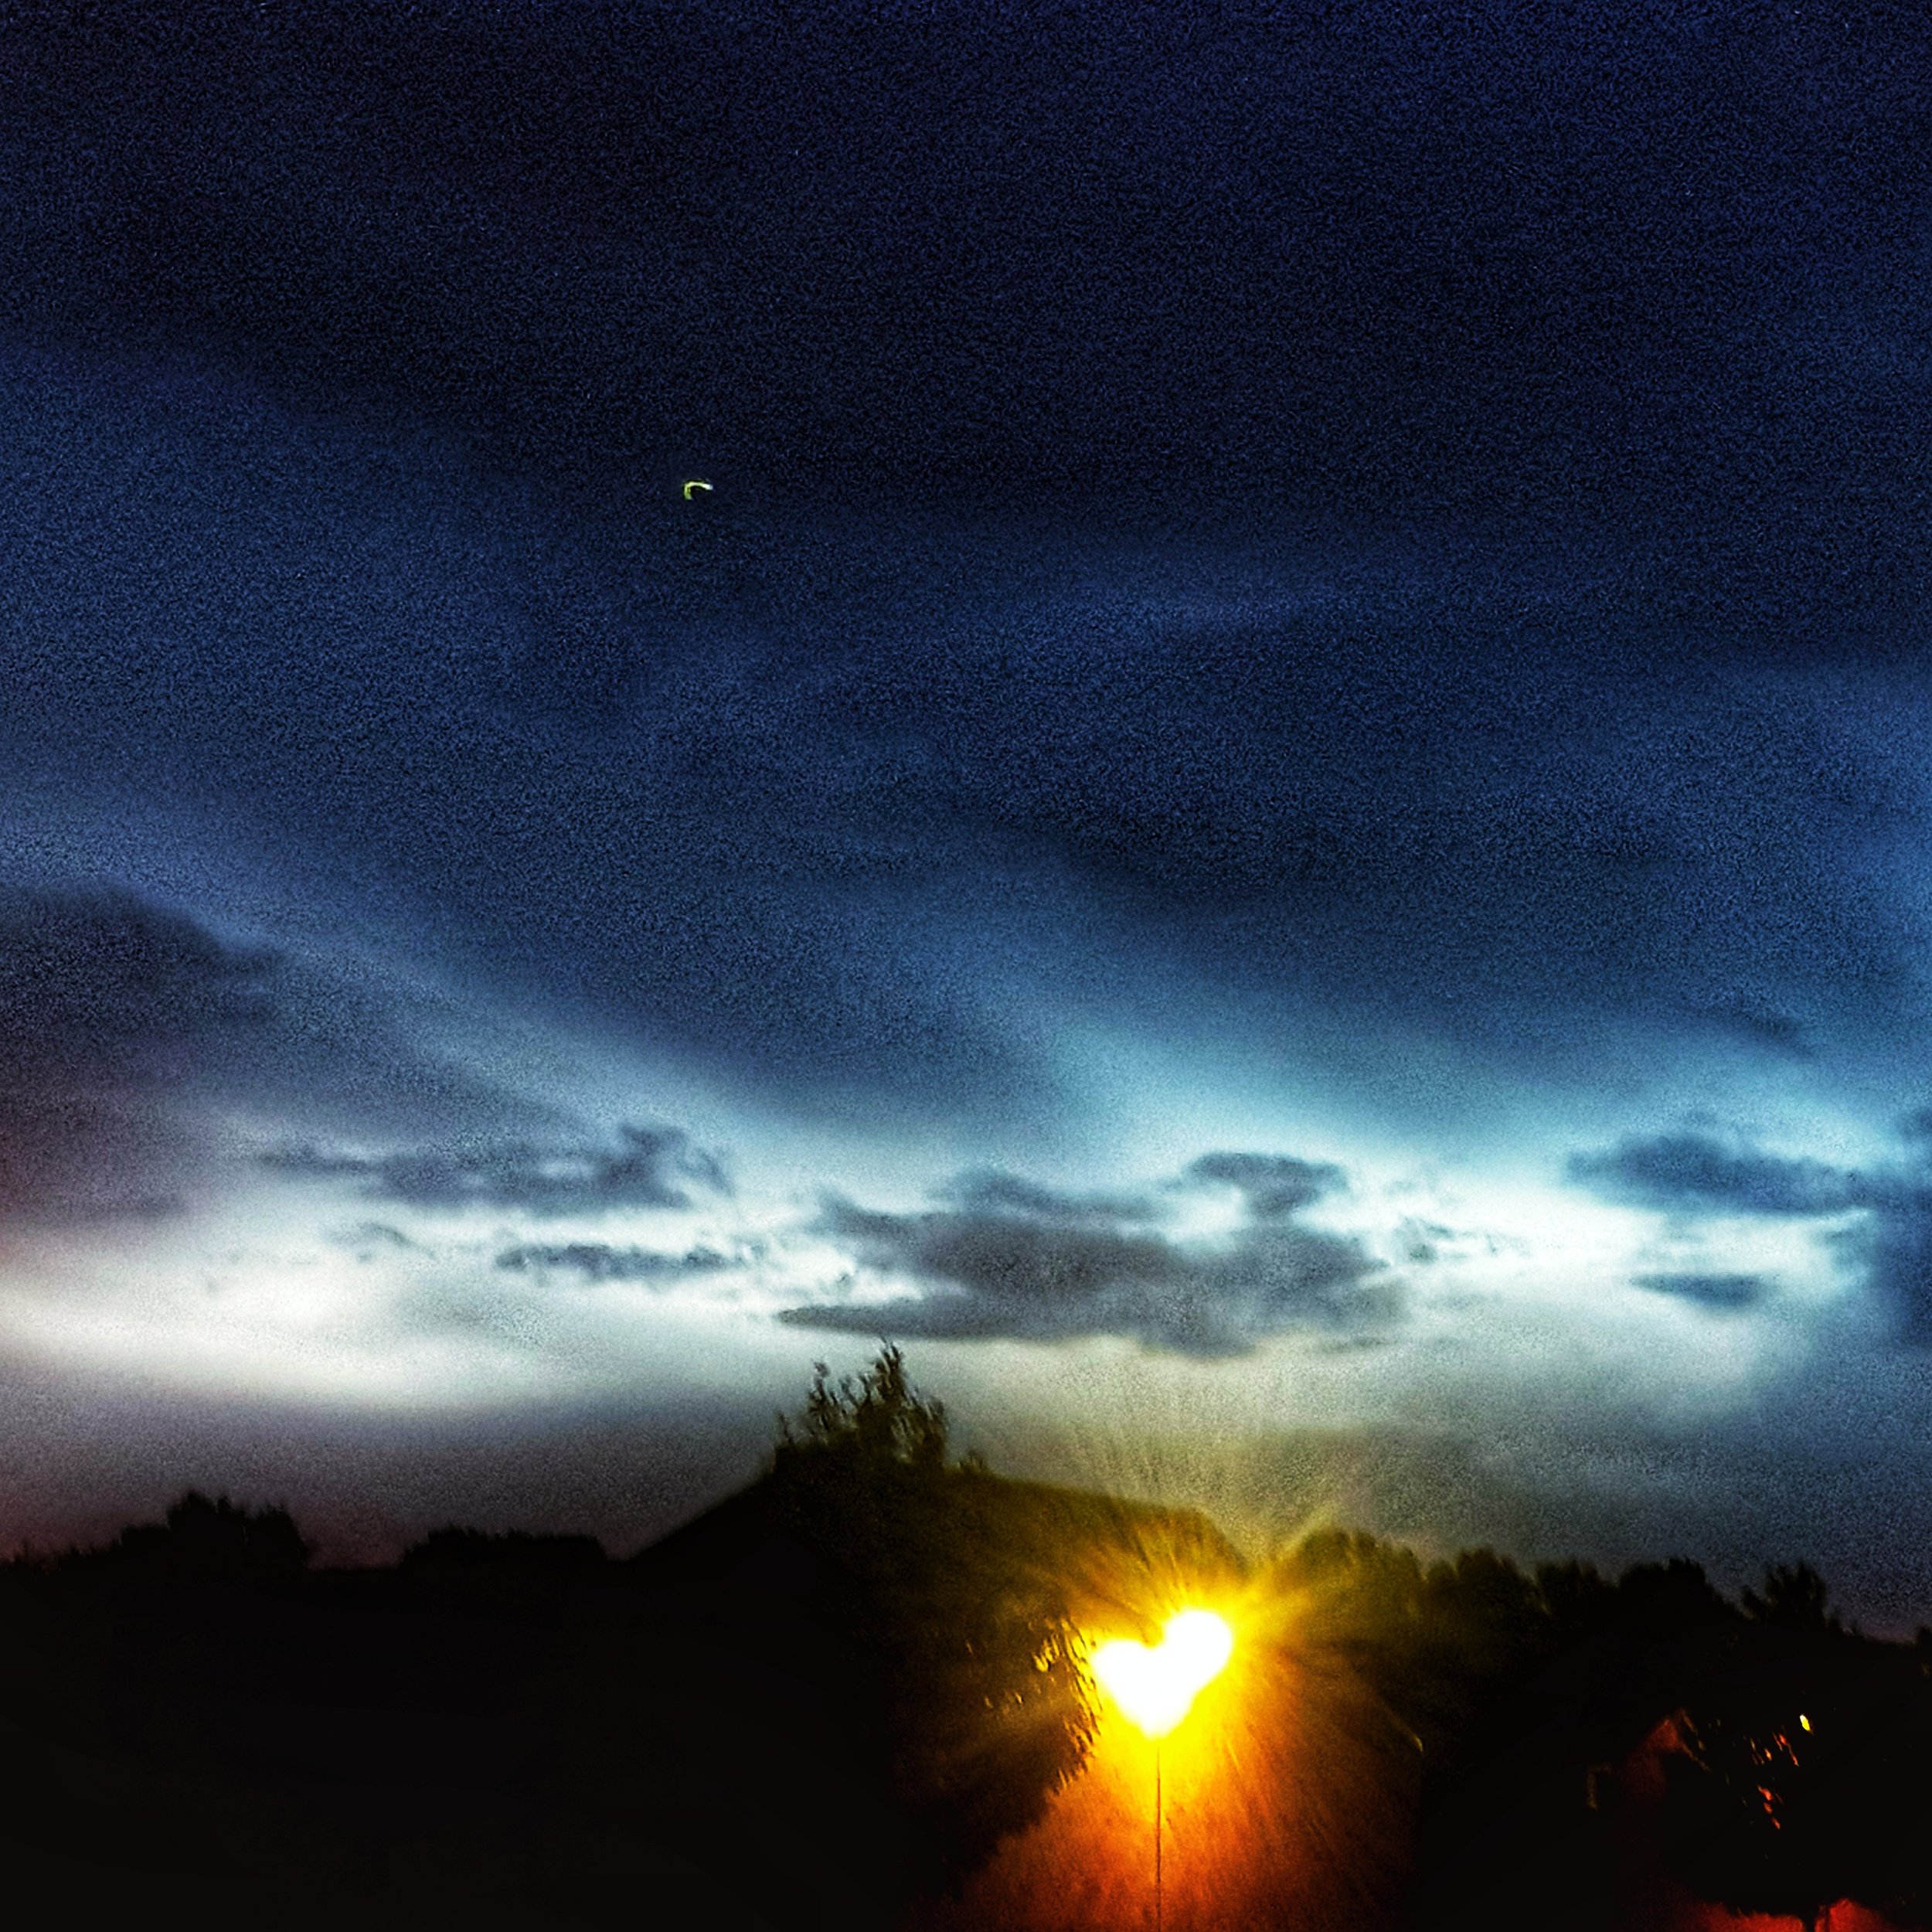 Day 192 - July 11: Illuminated night clouds